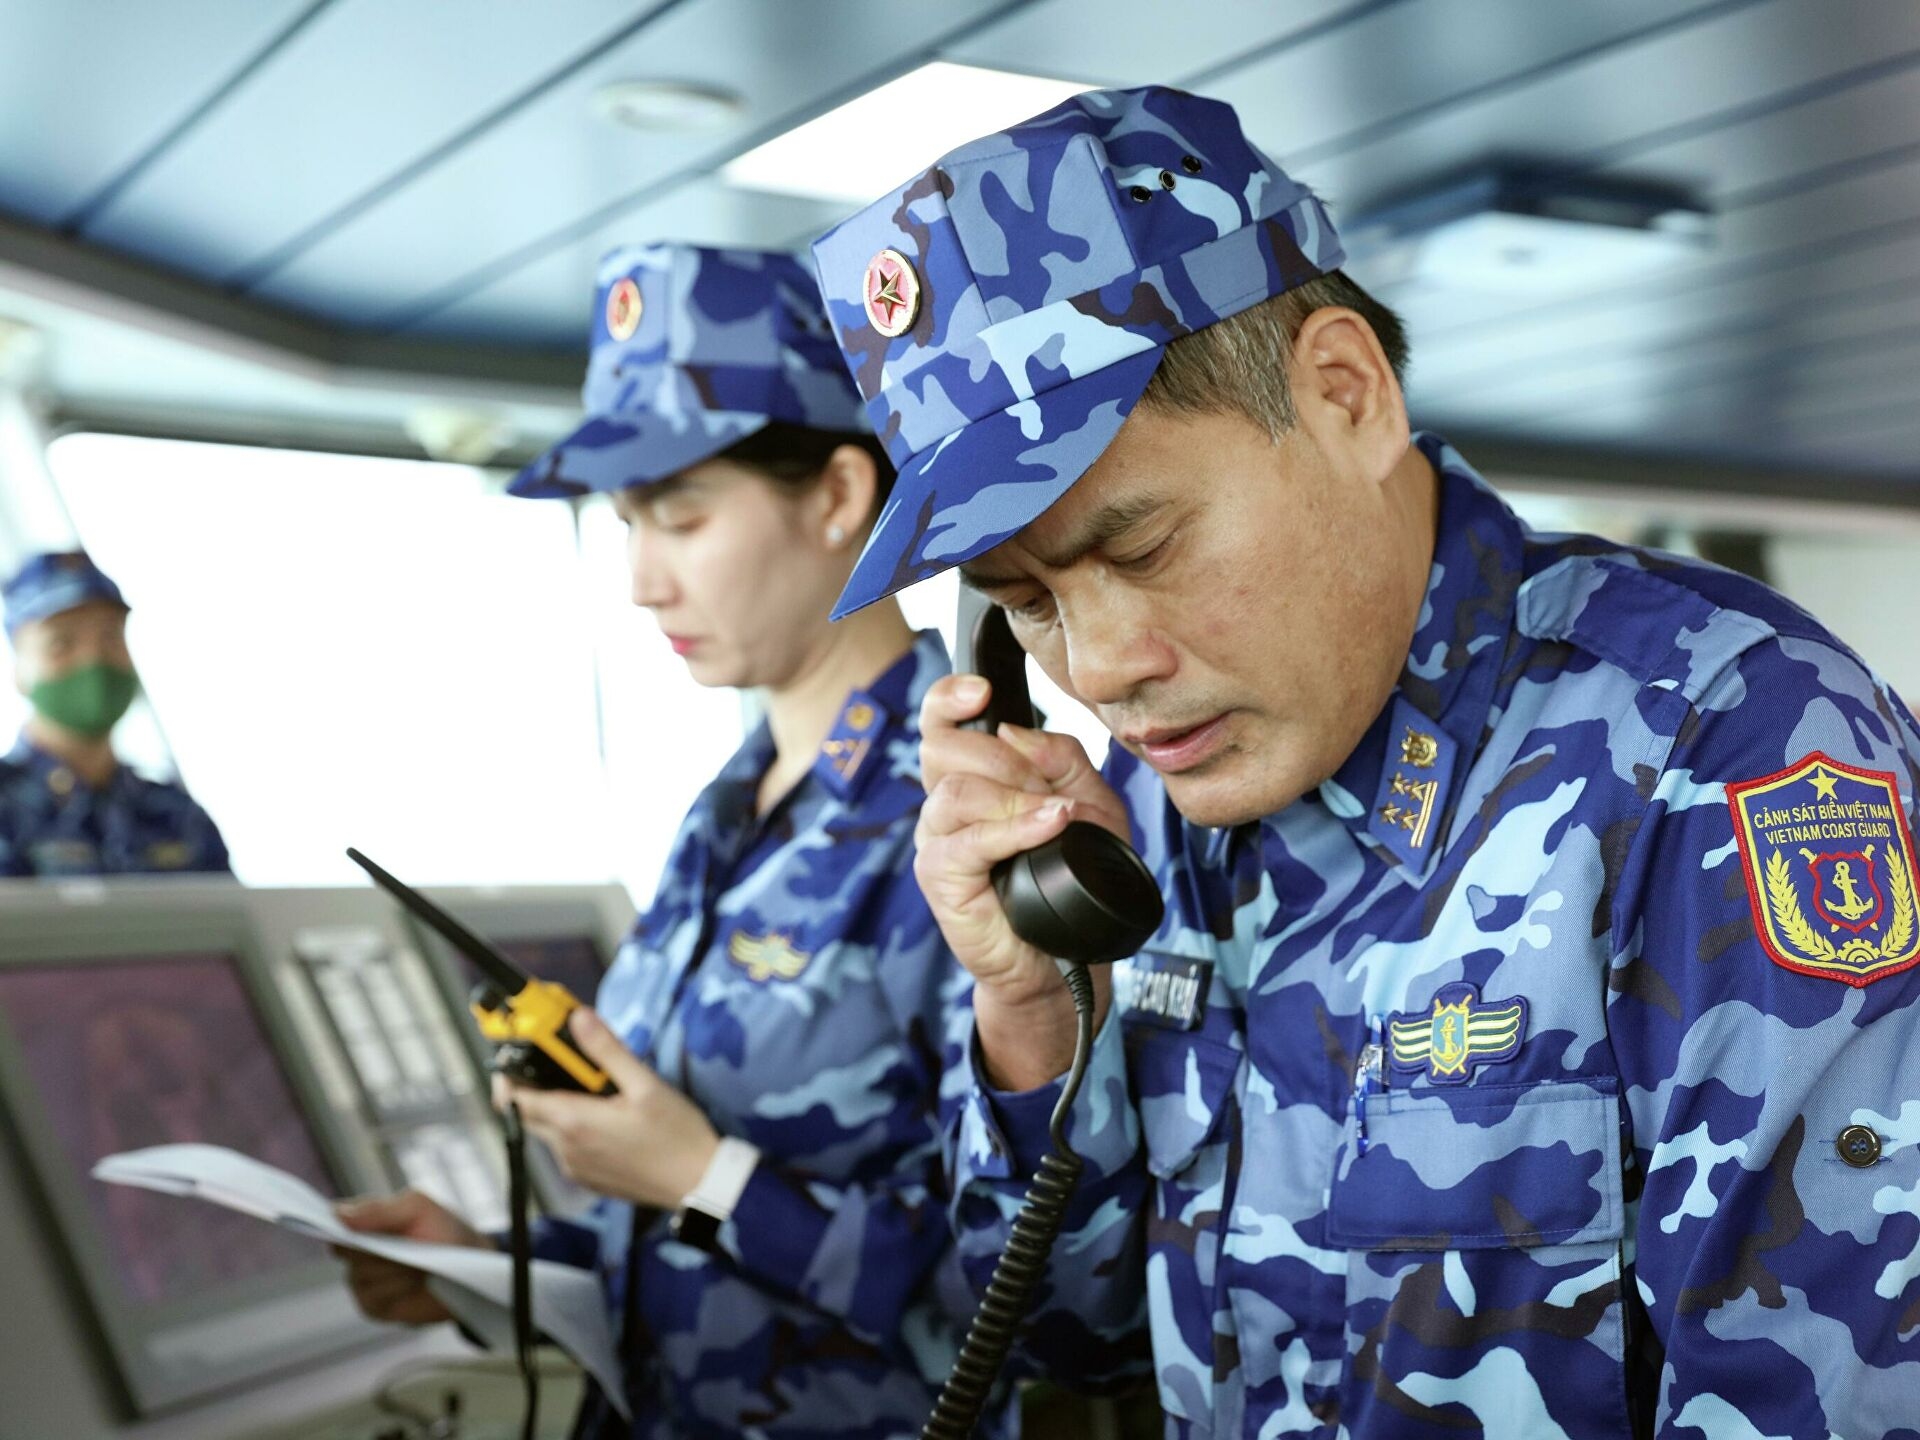 越中海警2021年第二次北部湾海域联合巡航圆满结束